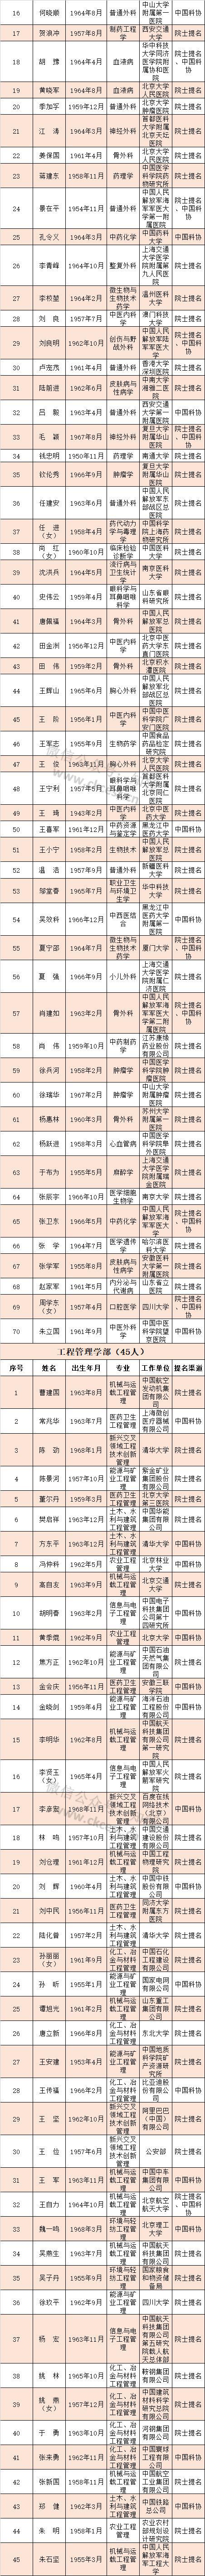 河南8人获中国工程院院士增选有效候选人 有你认识的吗